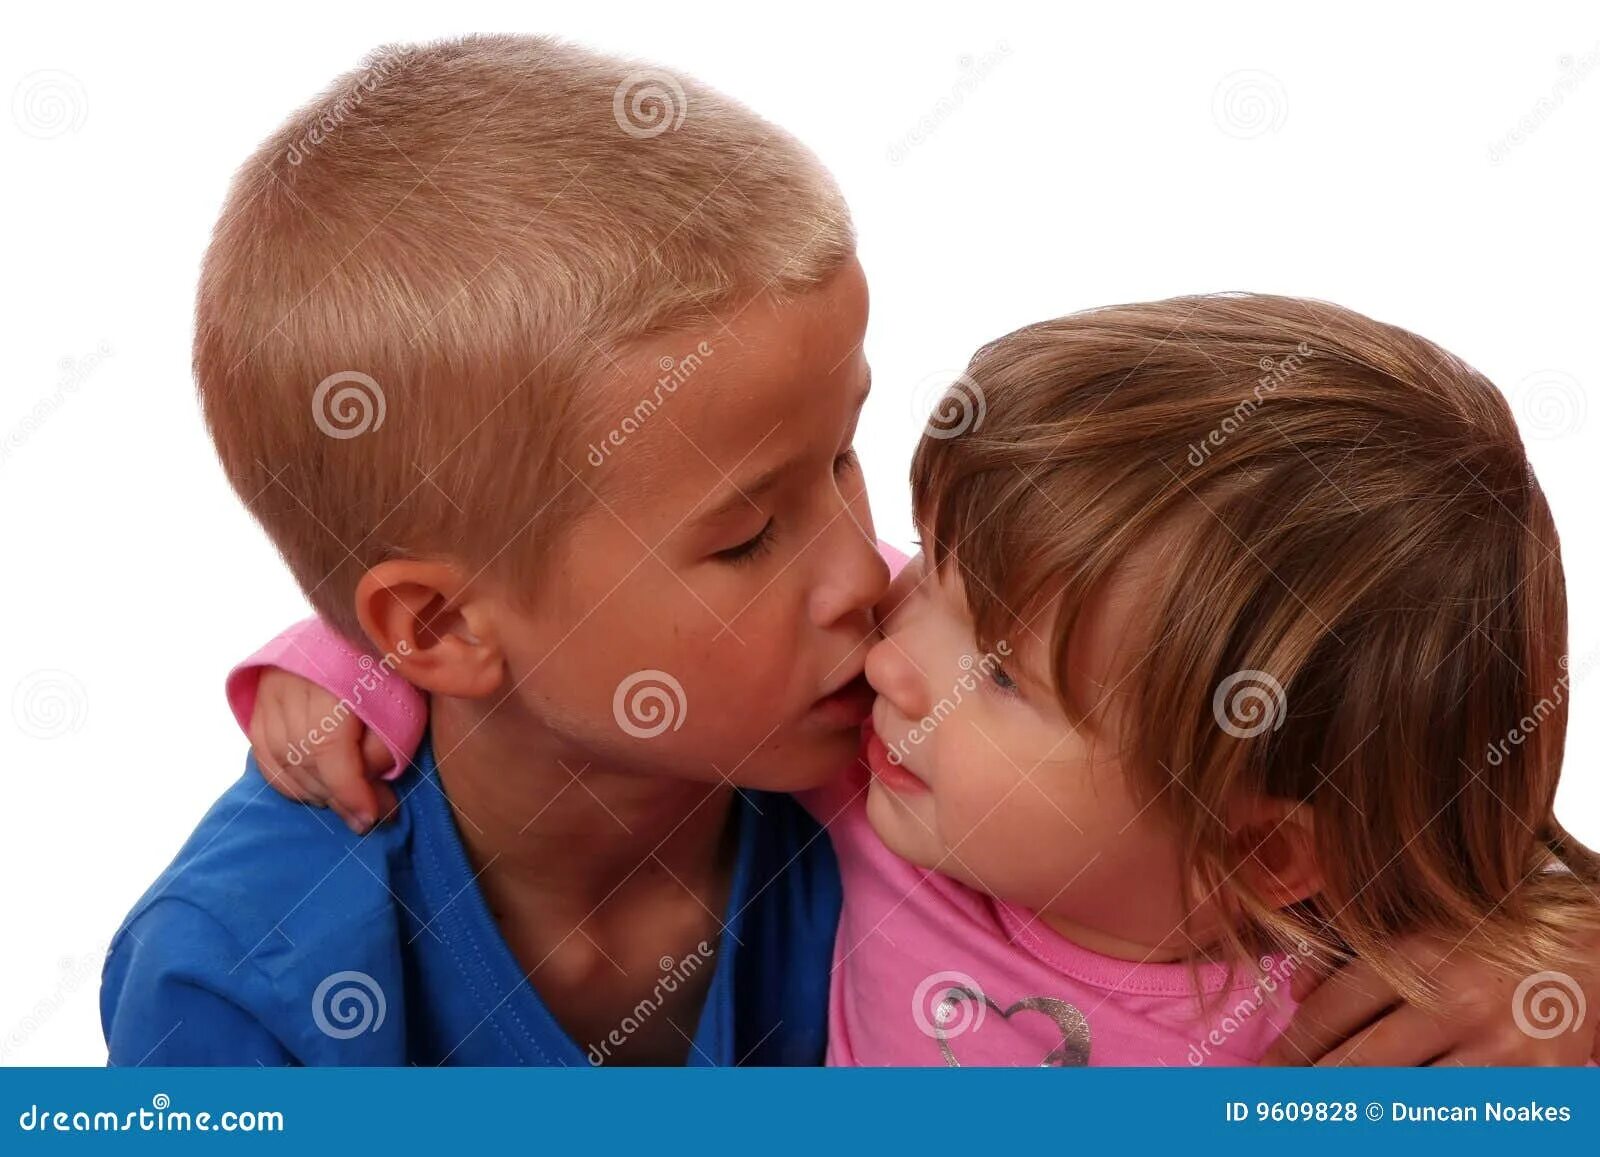 Отсосала другу брата. Старший брат целует младшего. Мальчик целует брата. Сосание девочки мальчиком. Дети отсасывают друг другу.